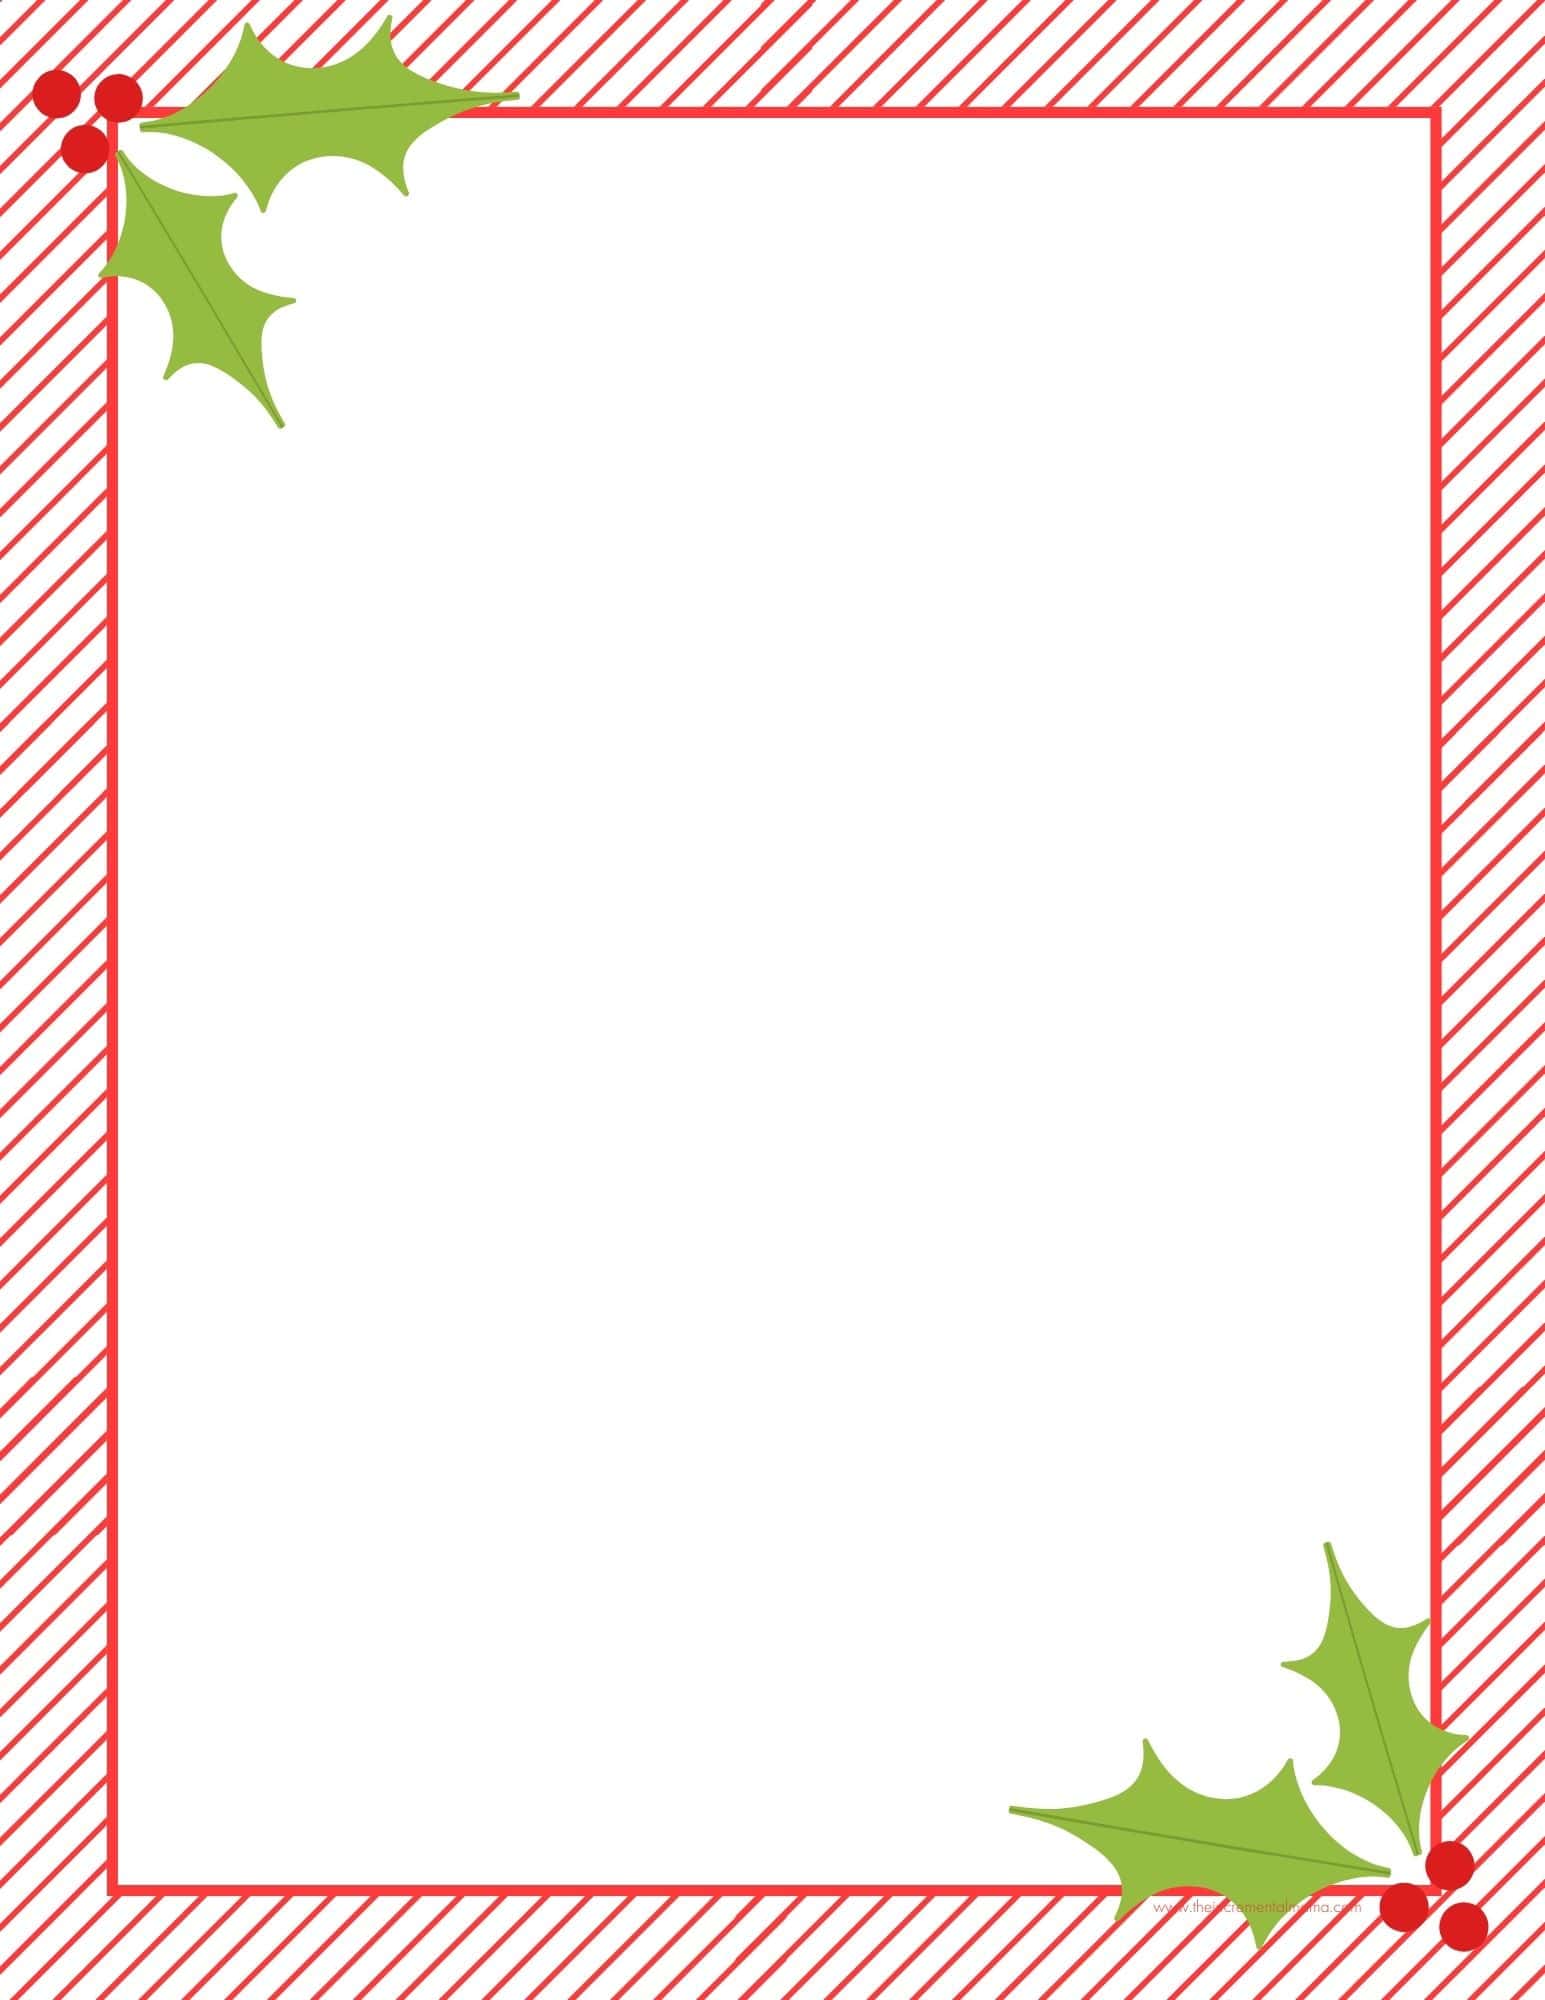 30+ Free Printable Christmas Border Printable Templates - The ...